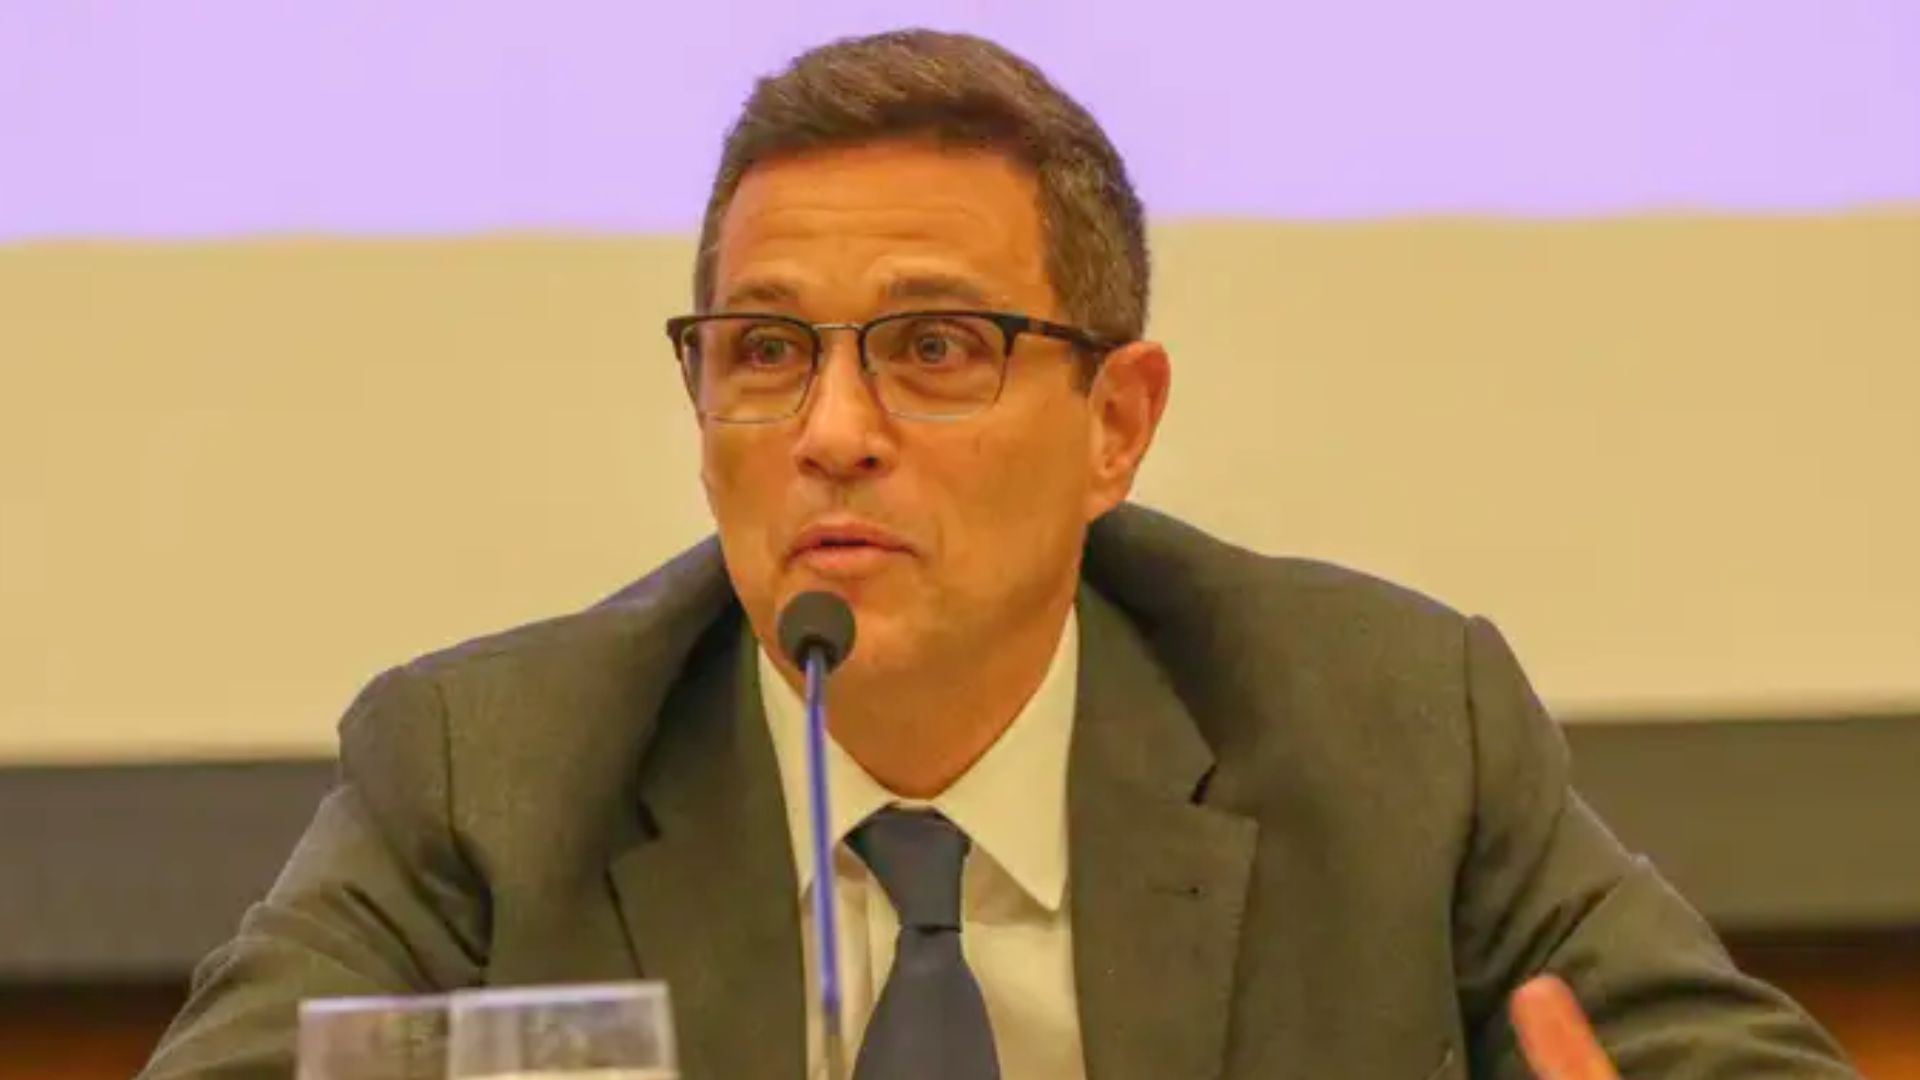 O presidente do Banco Central, Roberto Campos Neto, participa do seminário sobre os 25 anos da Lei de Lavagem de Dinheiro (Lei nº 9.613, de 1998), realizado pelo COAF (Conselho de Controle de Atividades Financeiras)